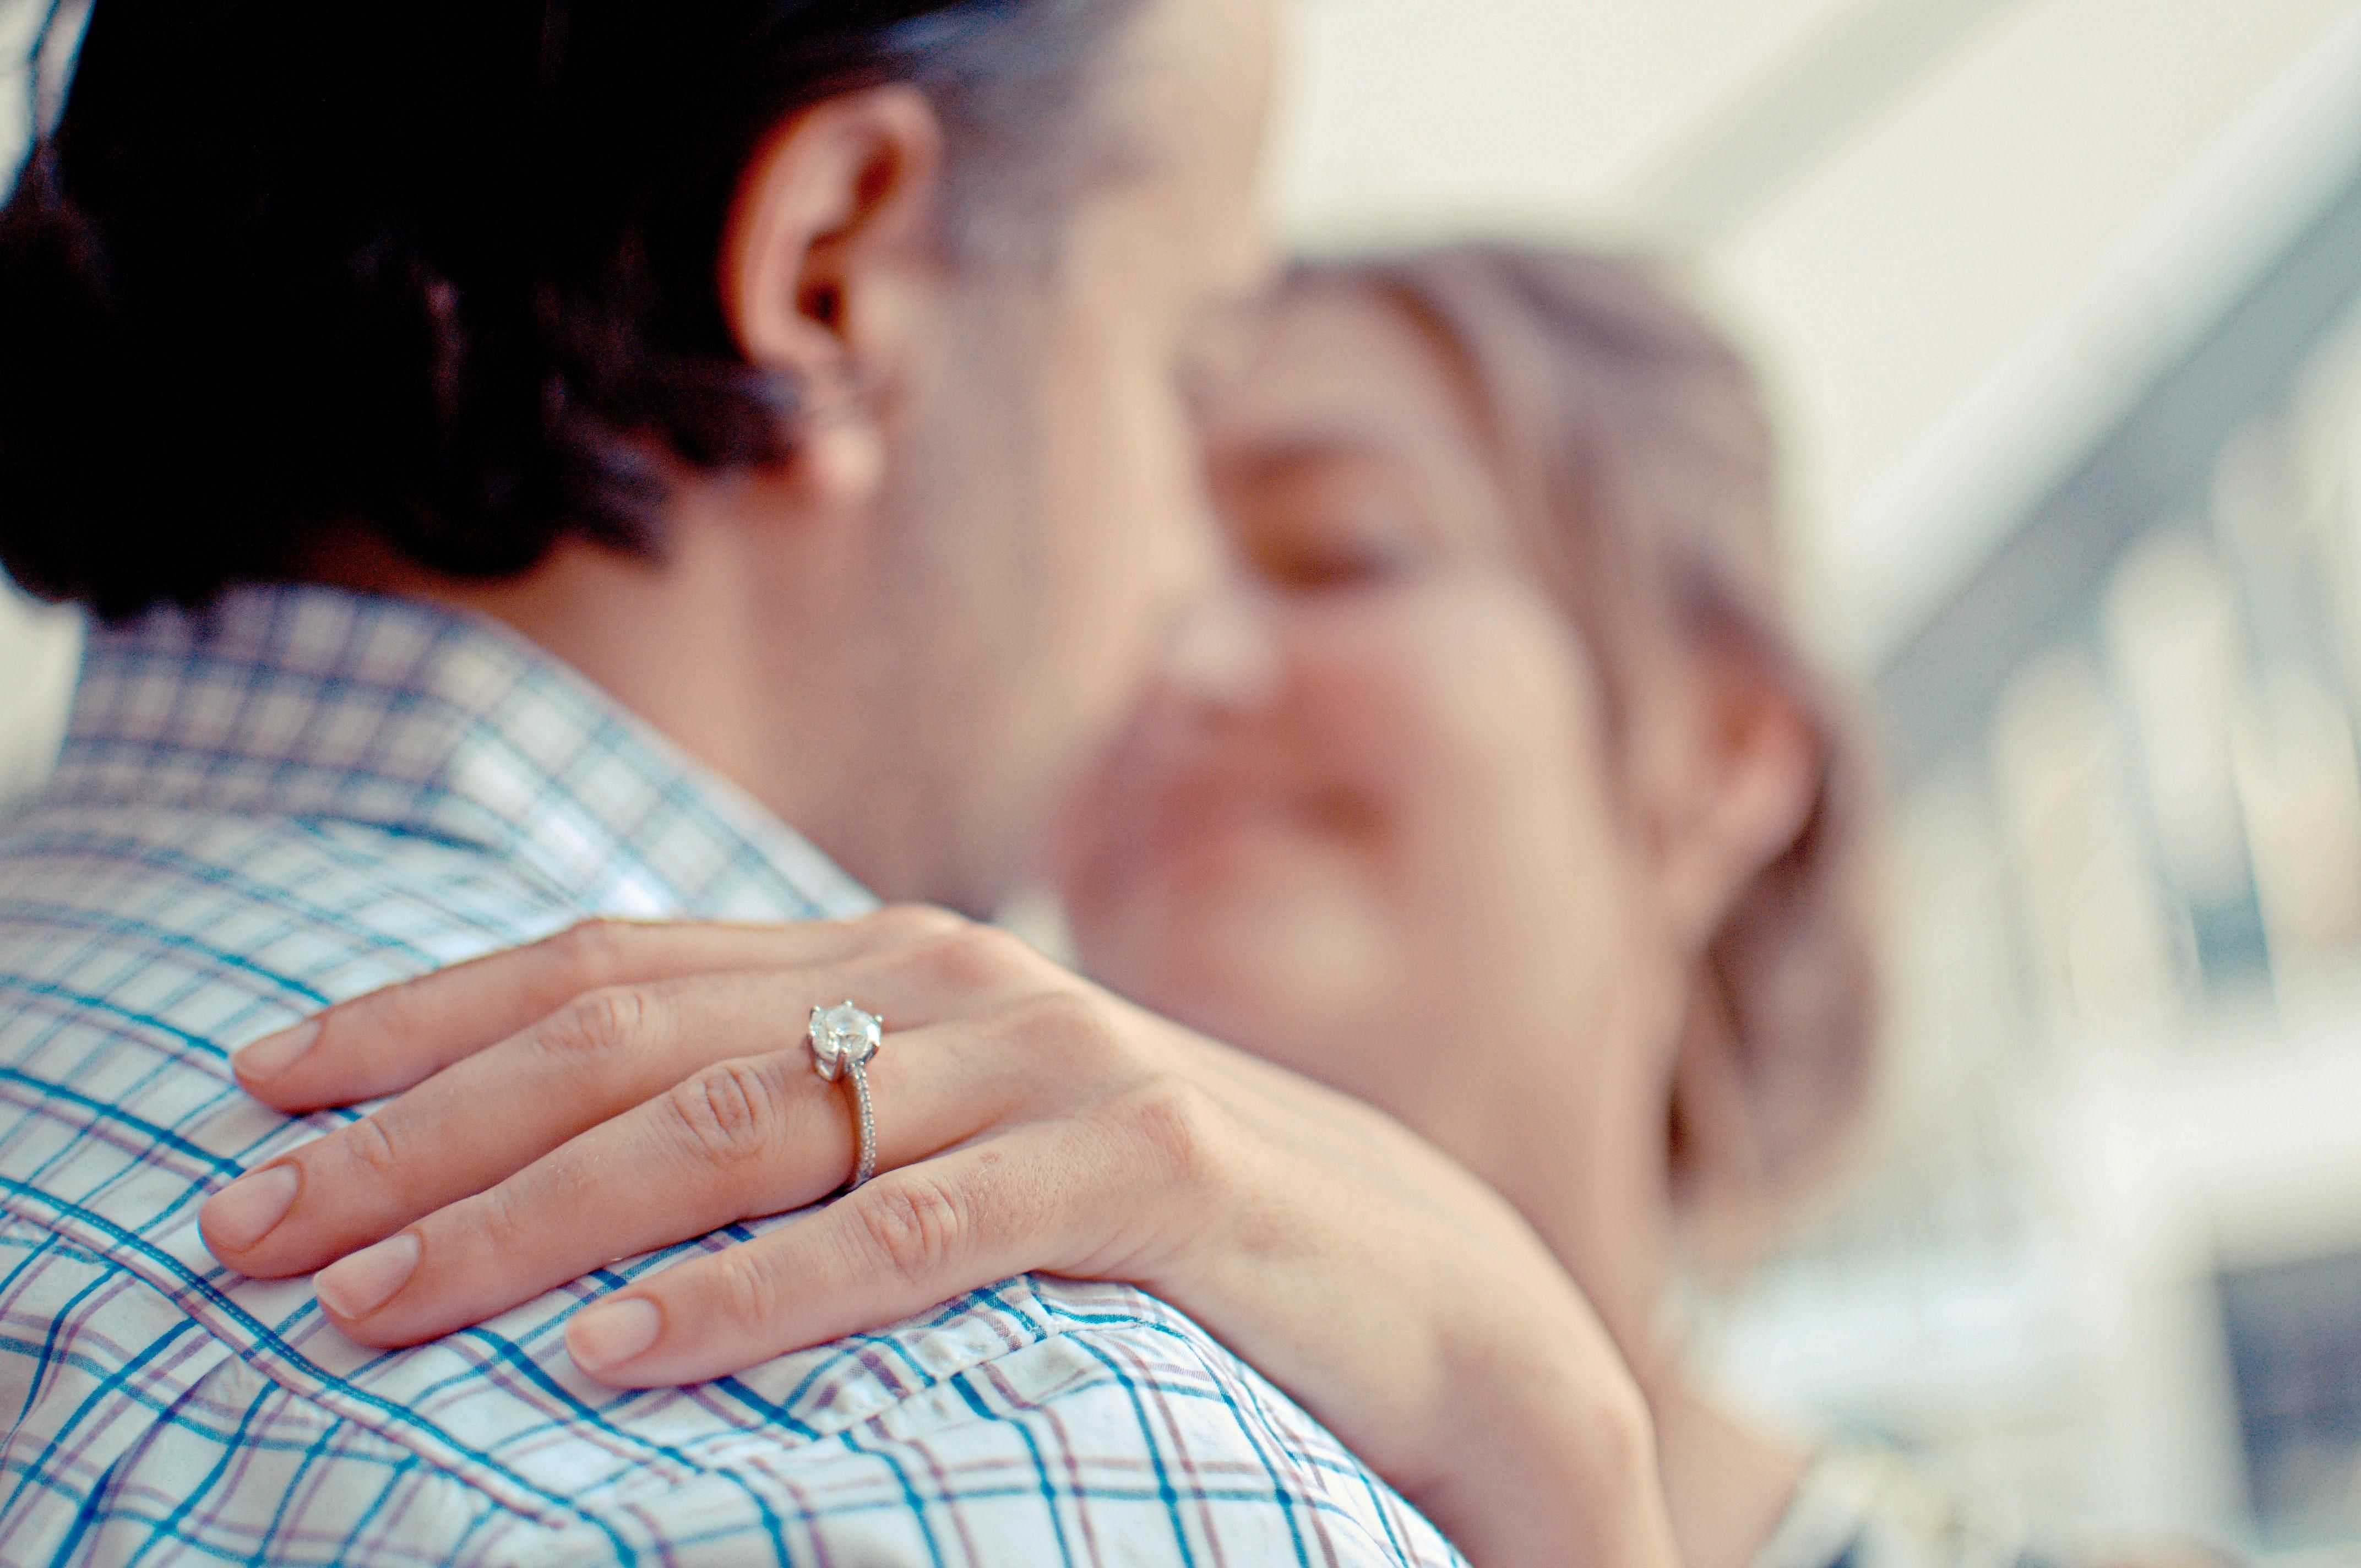 5 ознак, що хлопець планує запропонувати вам одружитися